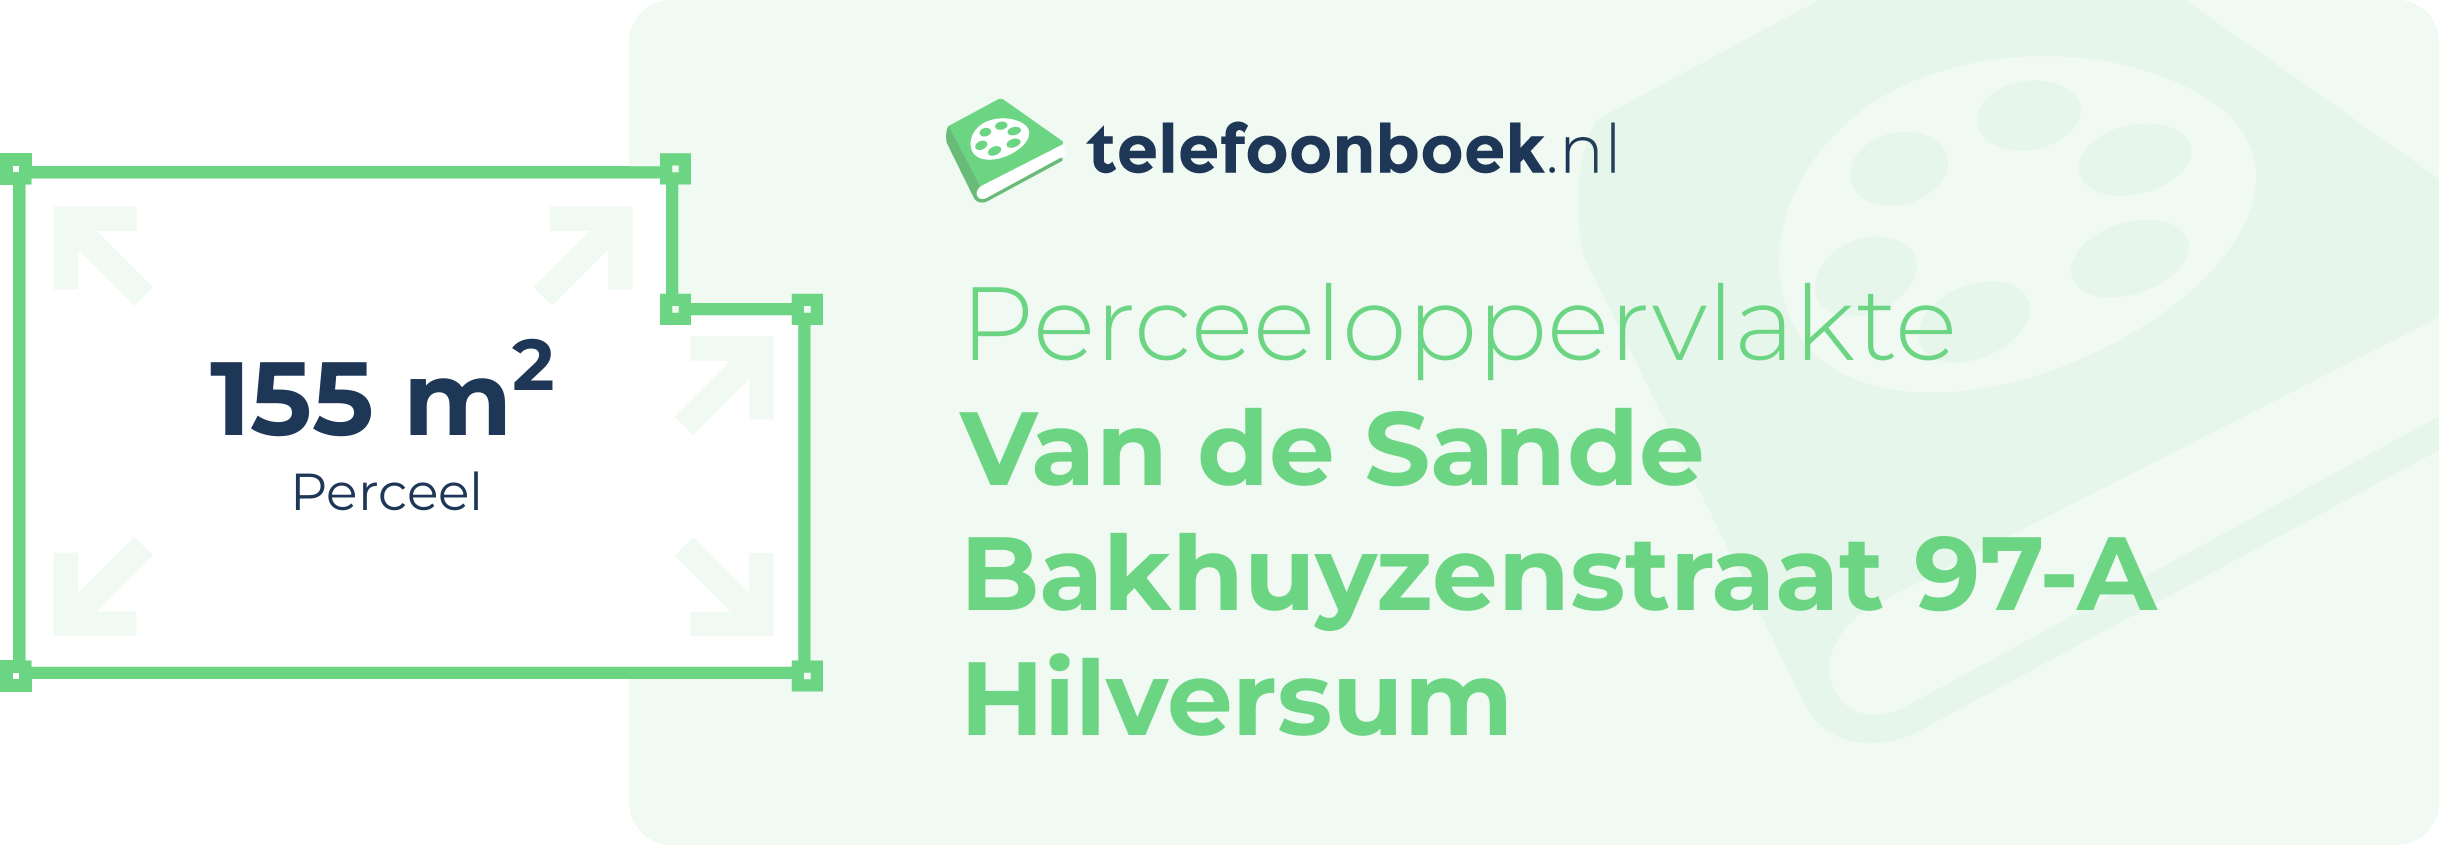 Perceeloppervlakte Van De Sande Bakhuyzenstraat 97-A Hilversum